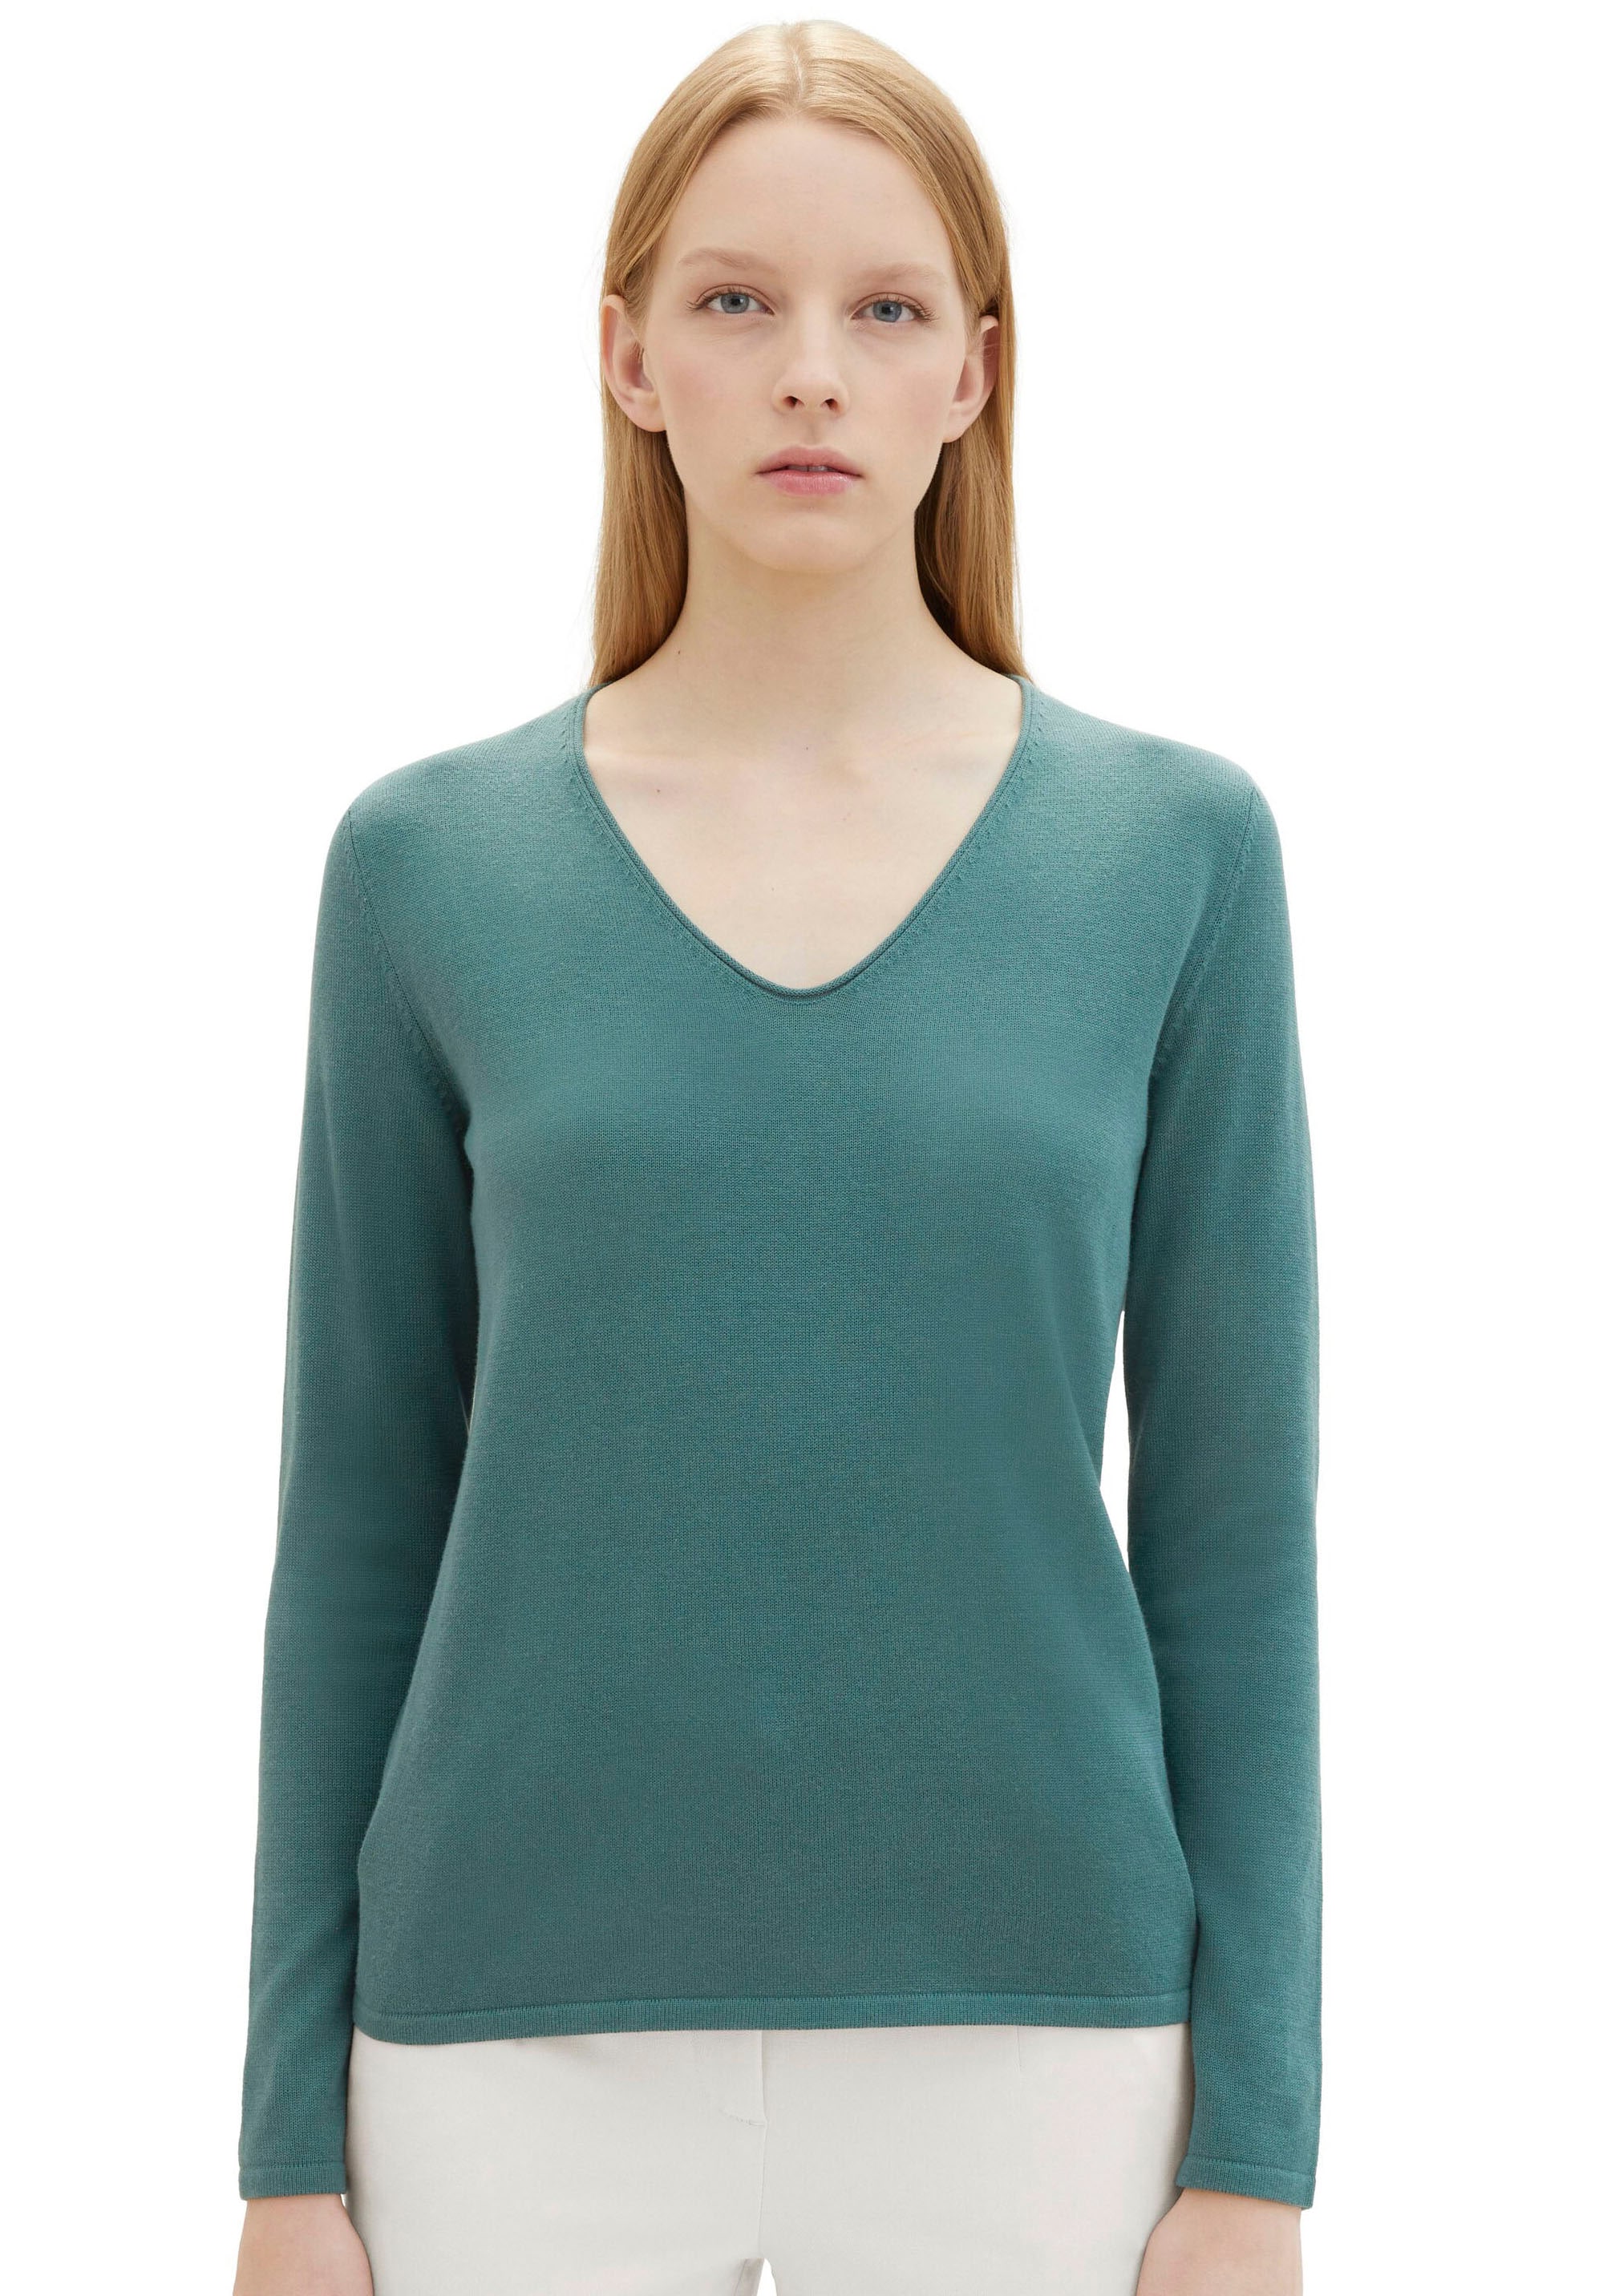 TOM TAILOR für Frauen Pullover & Strickjacken Pullover mit V-Ausschnitt sea Blue Melange, XL